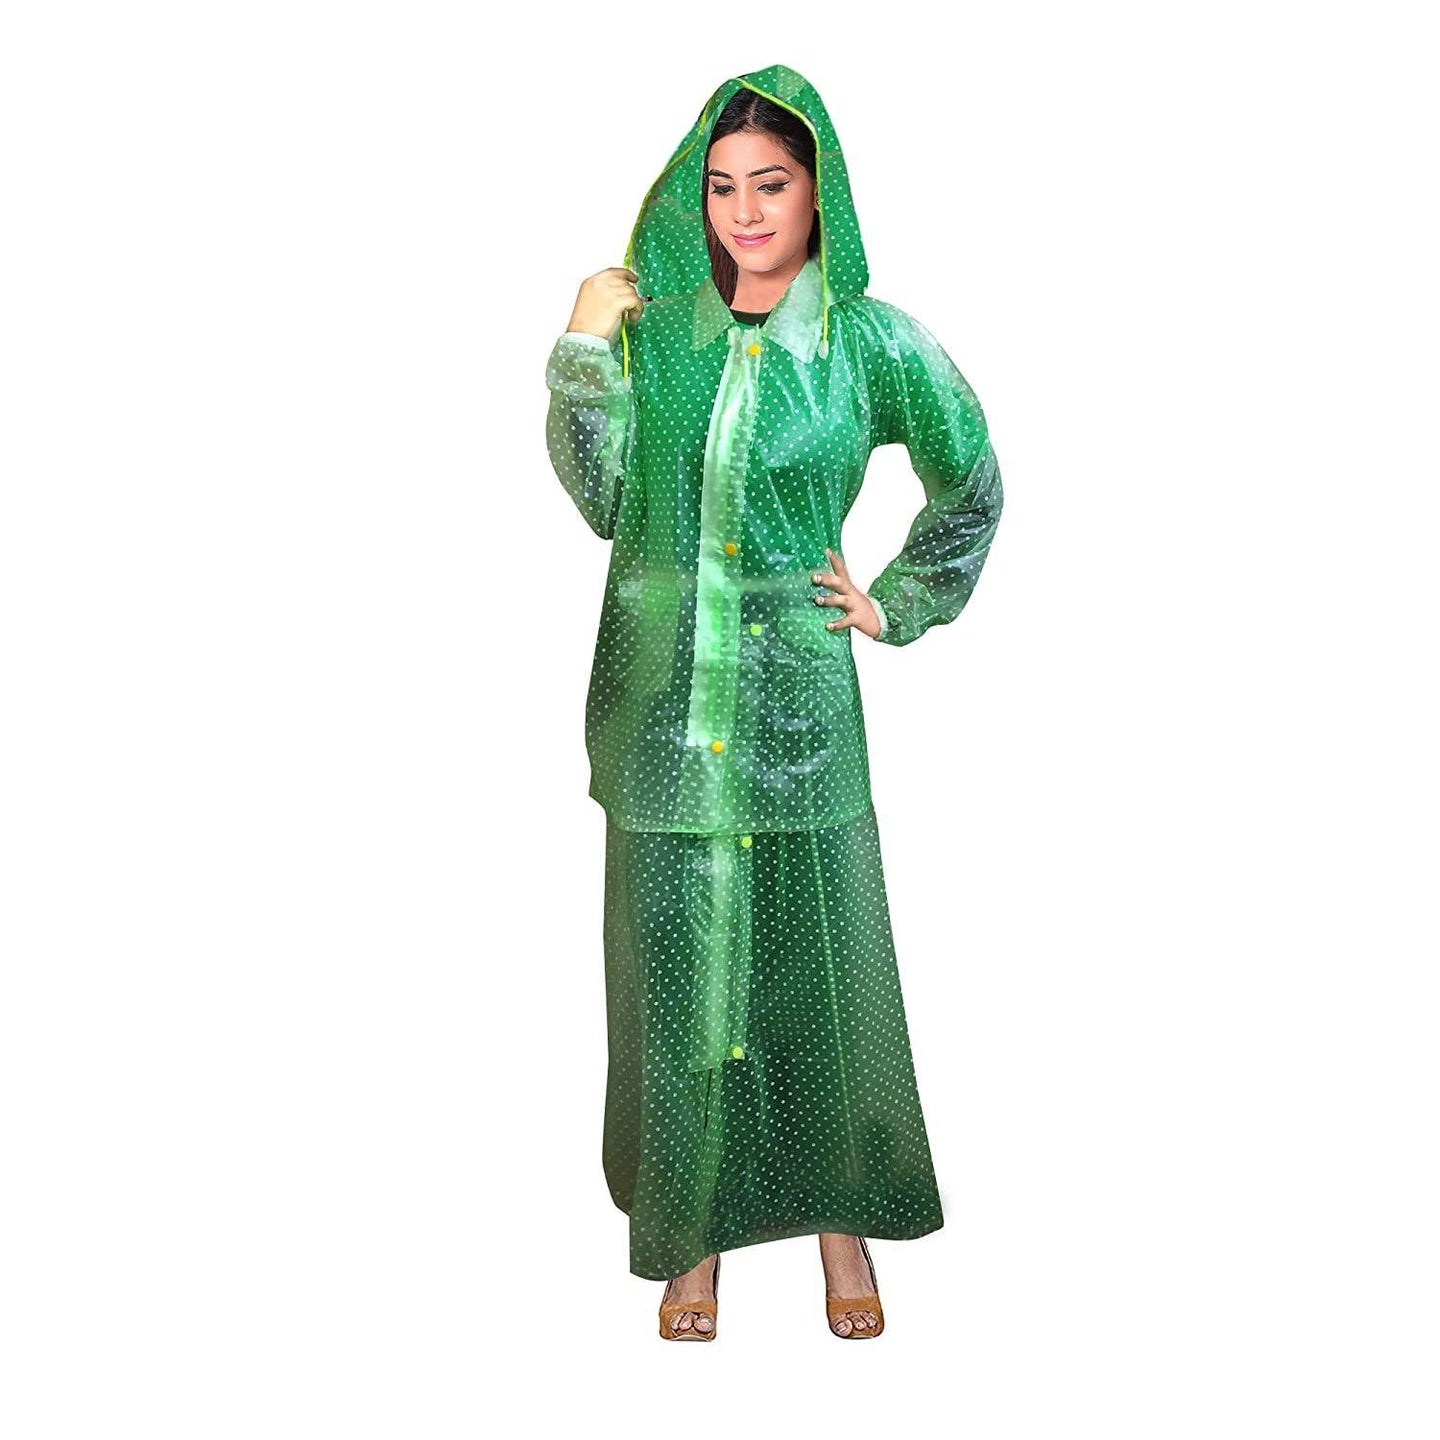 Romano nx Waterproof Rain Skirt and Rain Jacket for Women romanonx.com 